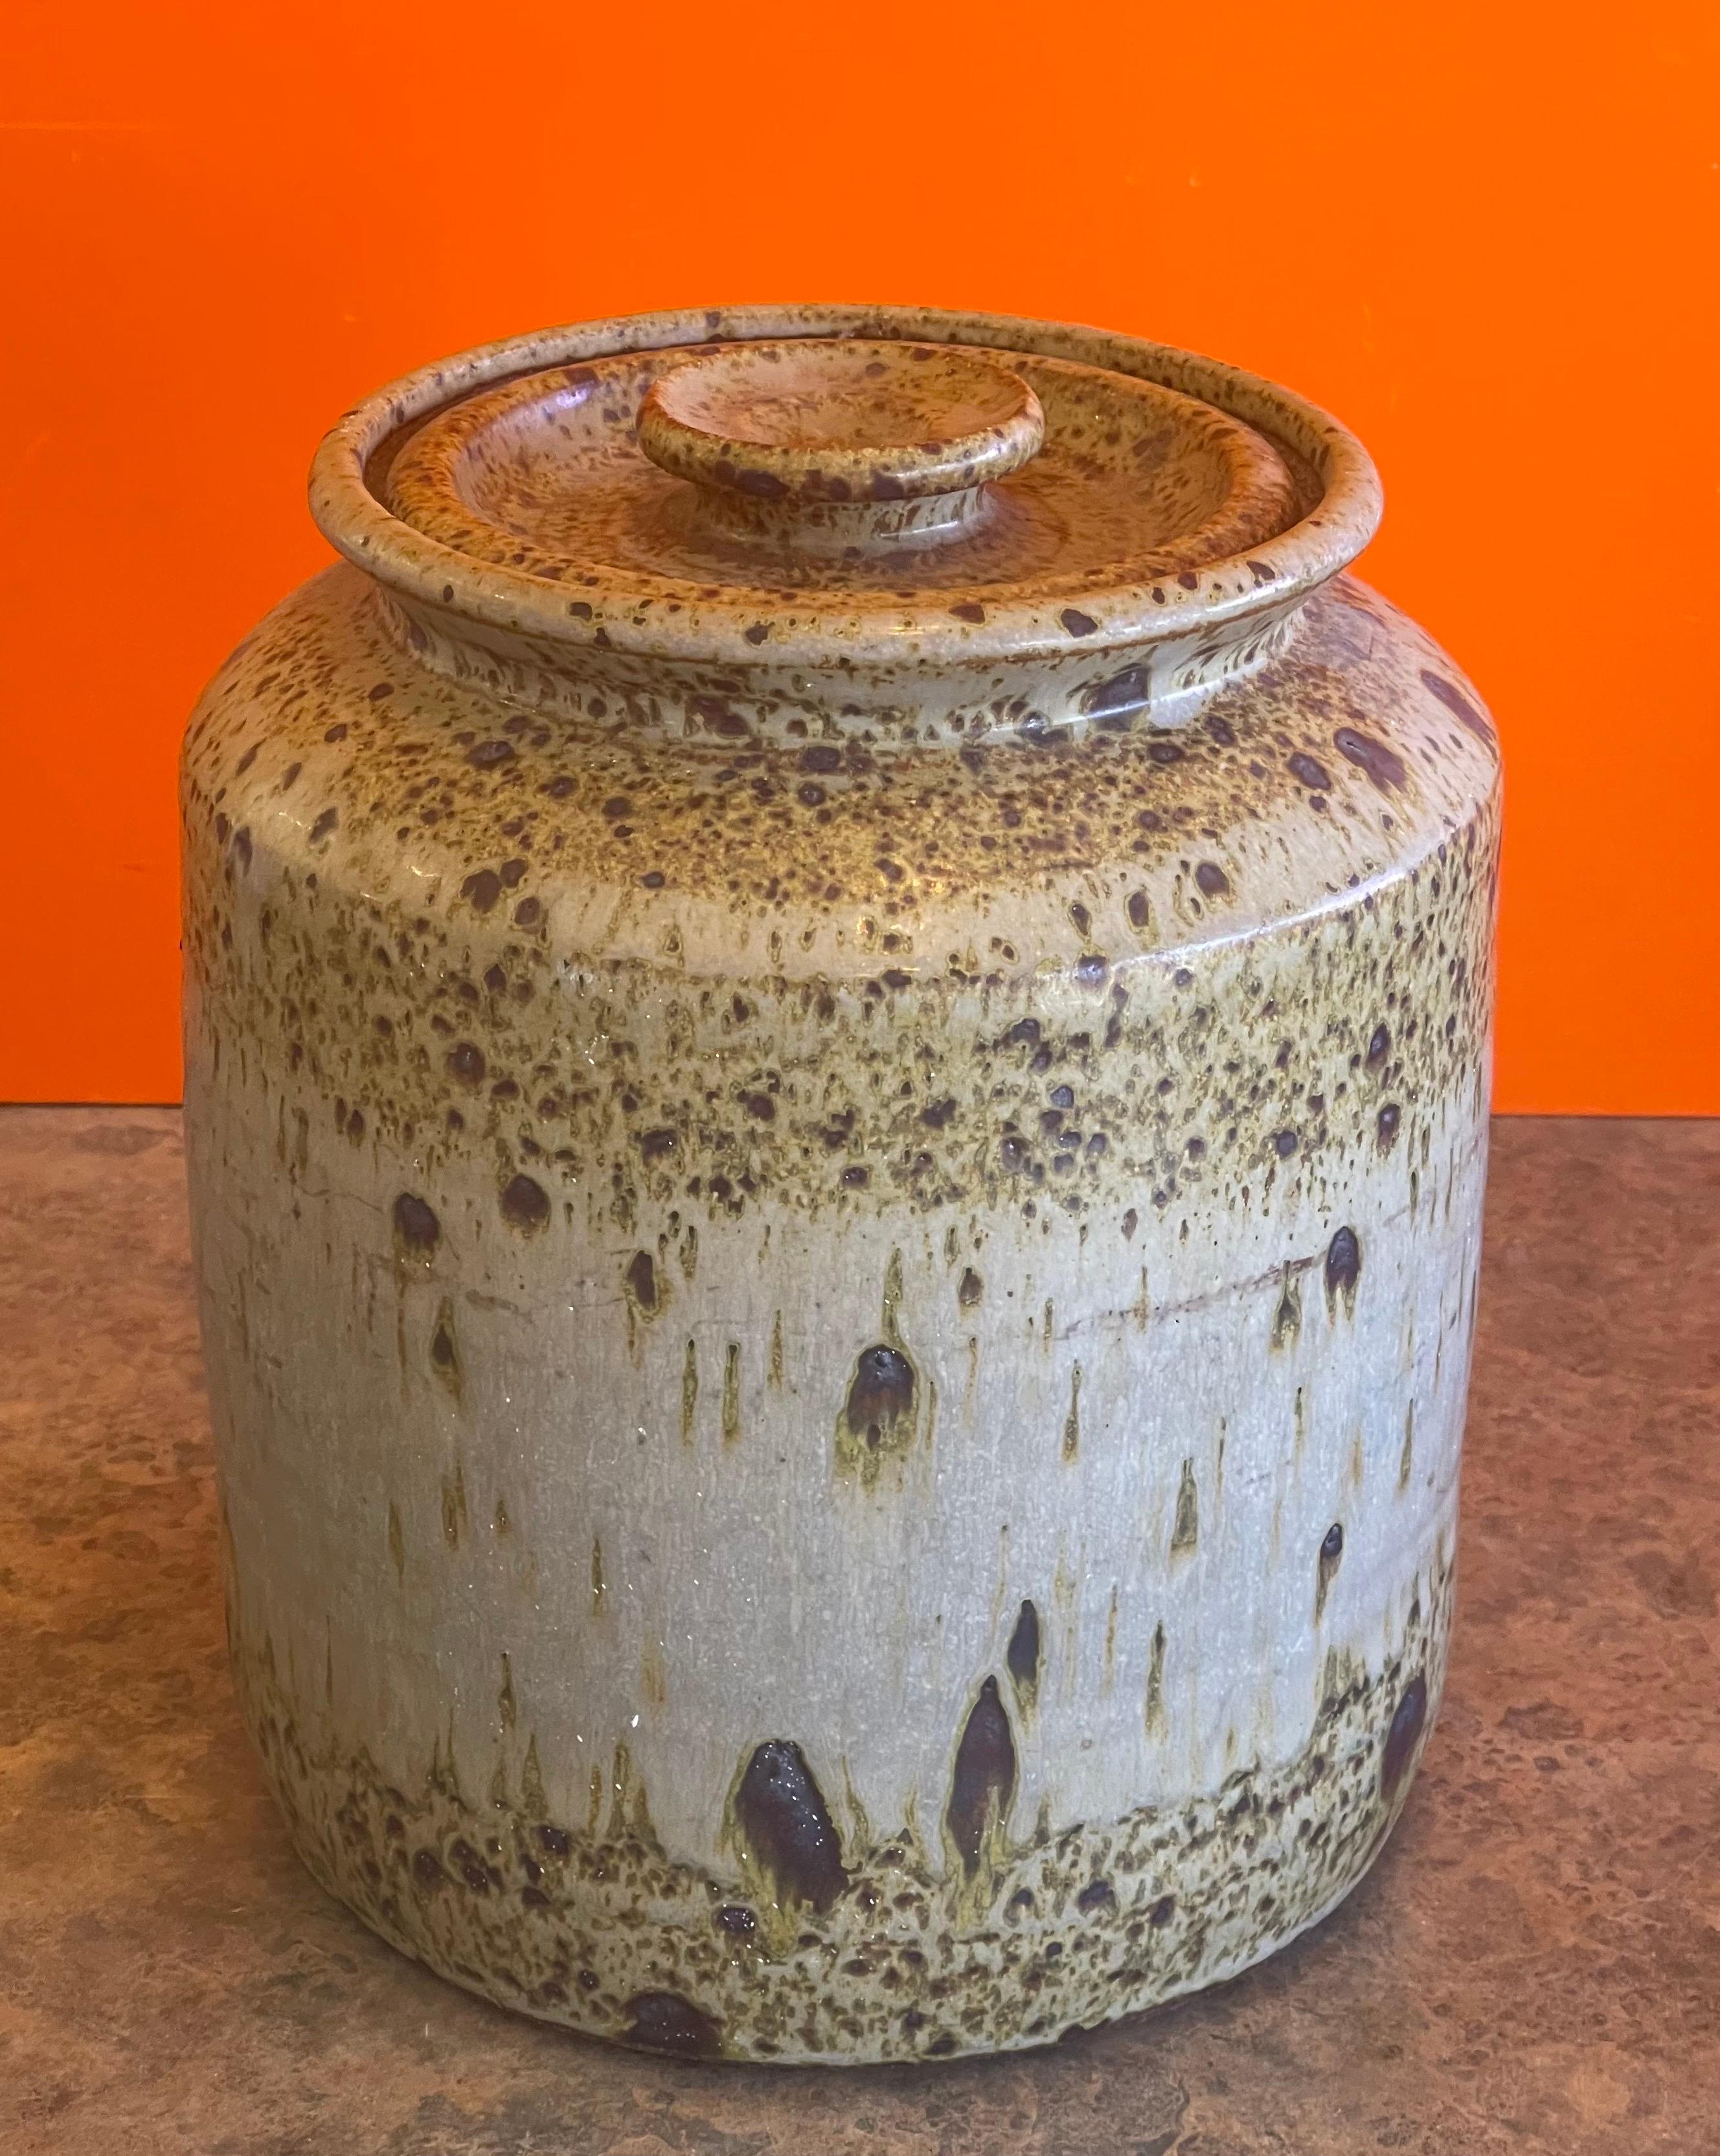 Grande boîte à biscuits MCM en poterie de studio en grès avec couvercle, vers les années 1970. Cette magnifique jarre tournée et finie à la main a un design merveilleux et une grande texture. La pièce mesure 9